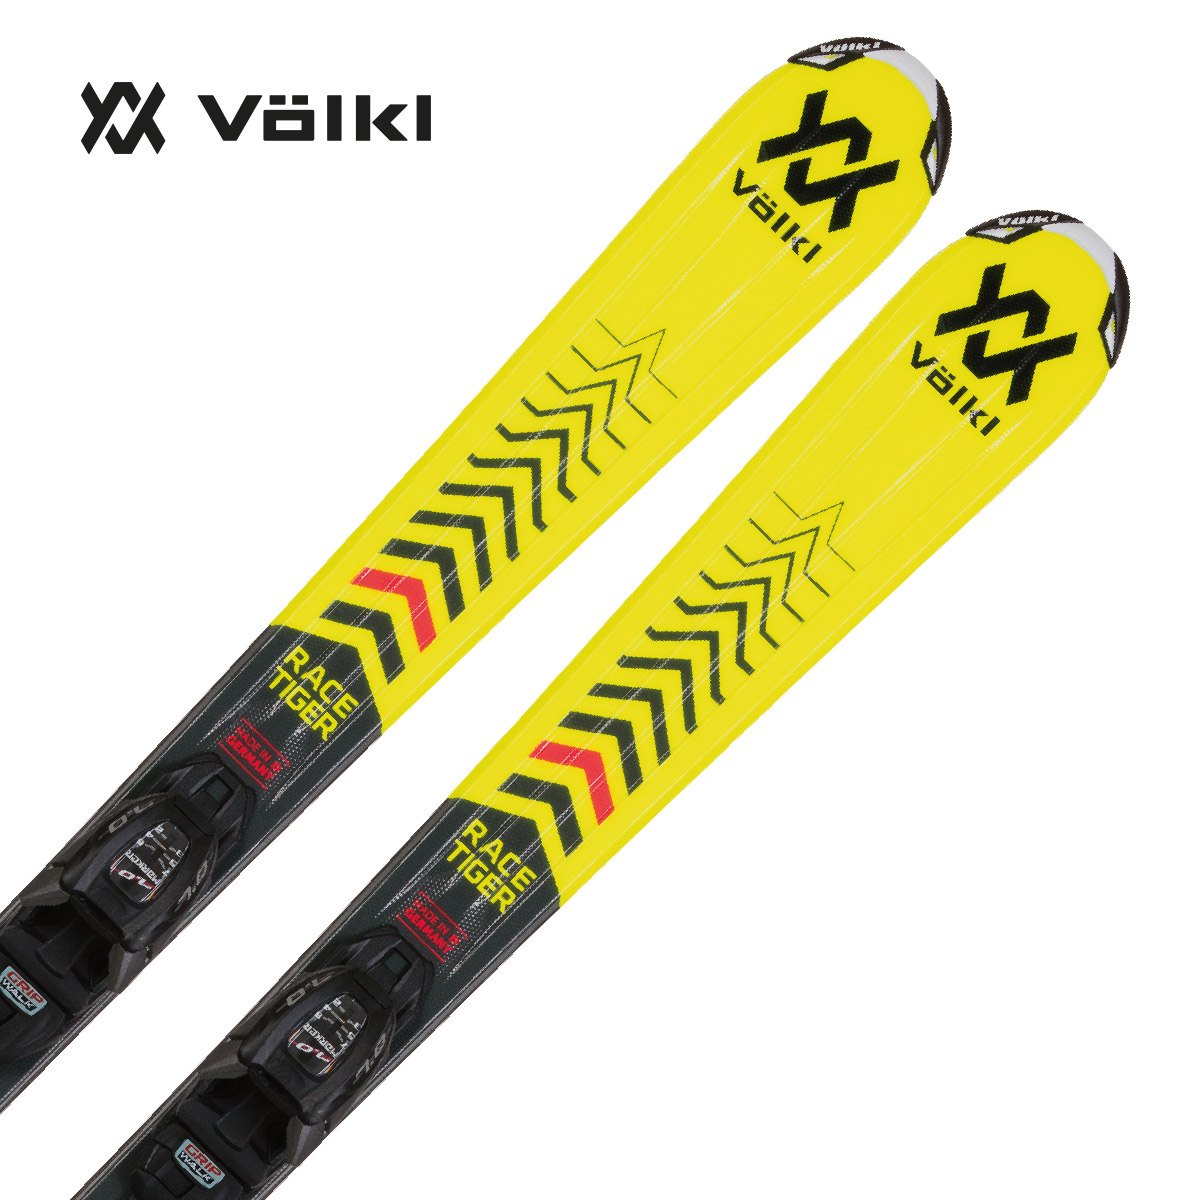 限定特価 スキー セット 3点 メンズ レディース VOLKL〔スキー板〕 2021 DEACON ELITE vMOTION 10 GW  DALBELLO〔スキーブーツ〕DS MX 80